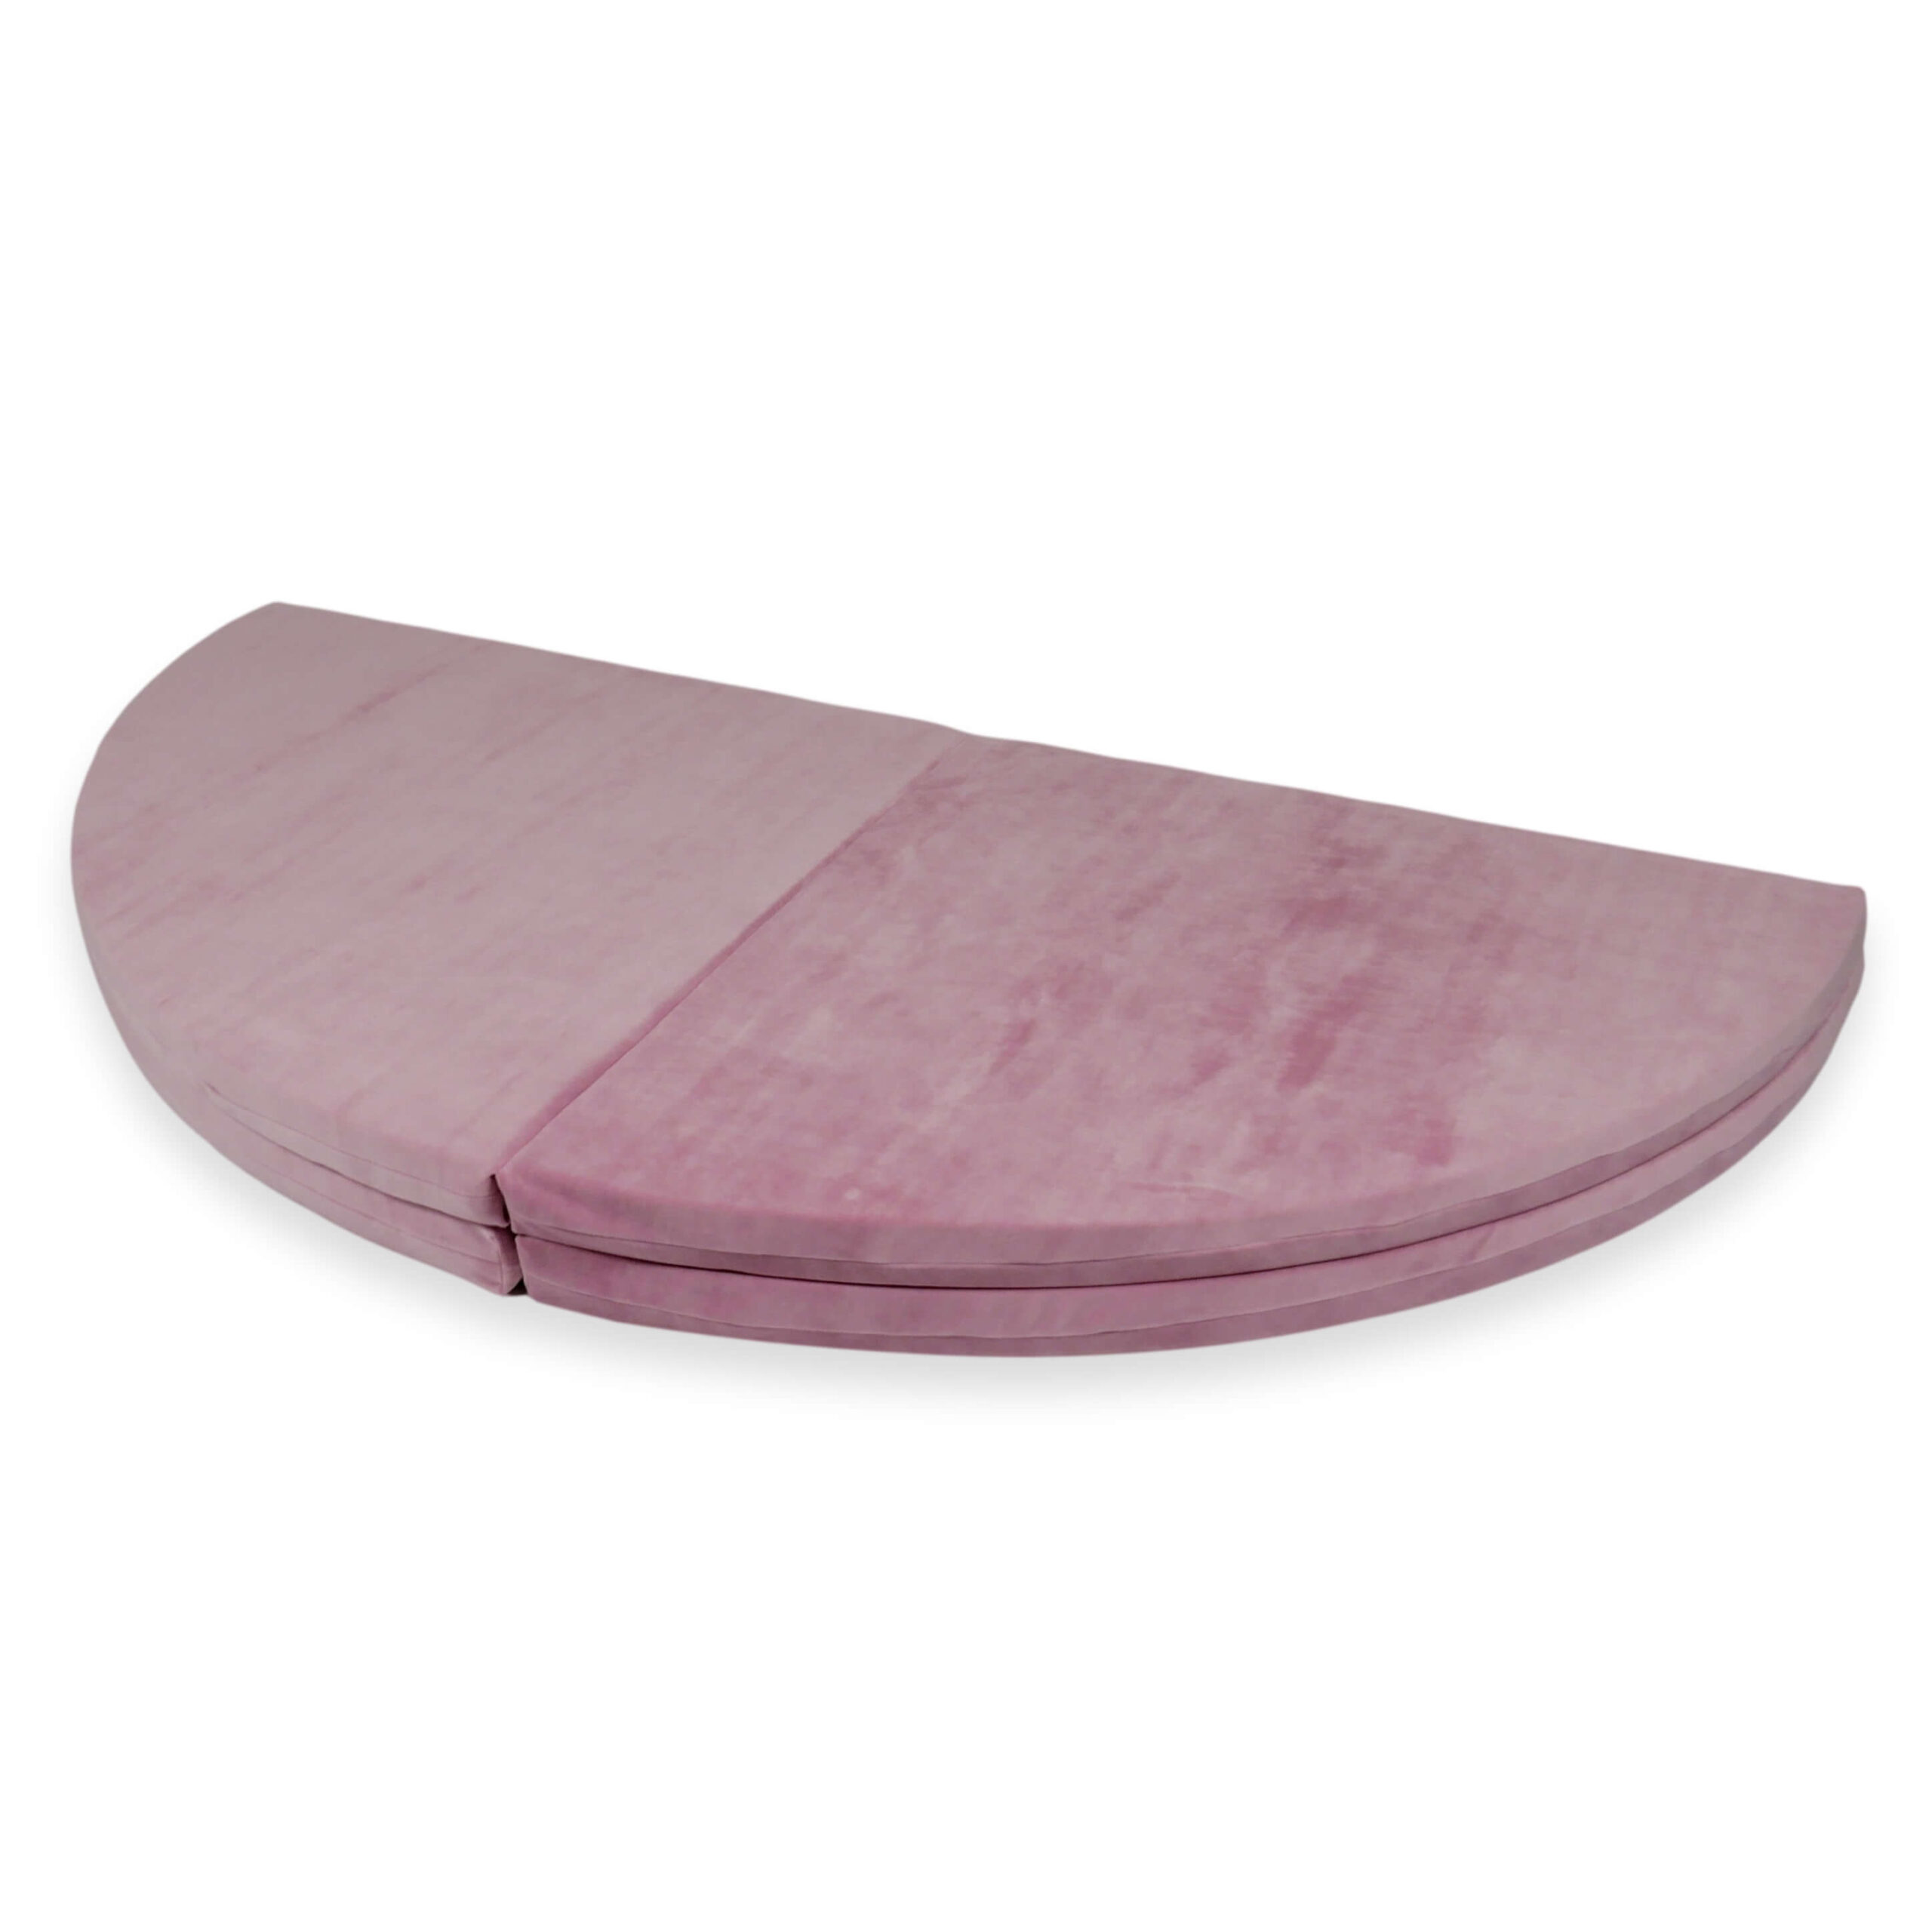 Kör alakú szivacs játszószőnyeg velvet rózsaszín színben